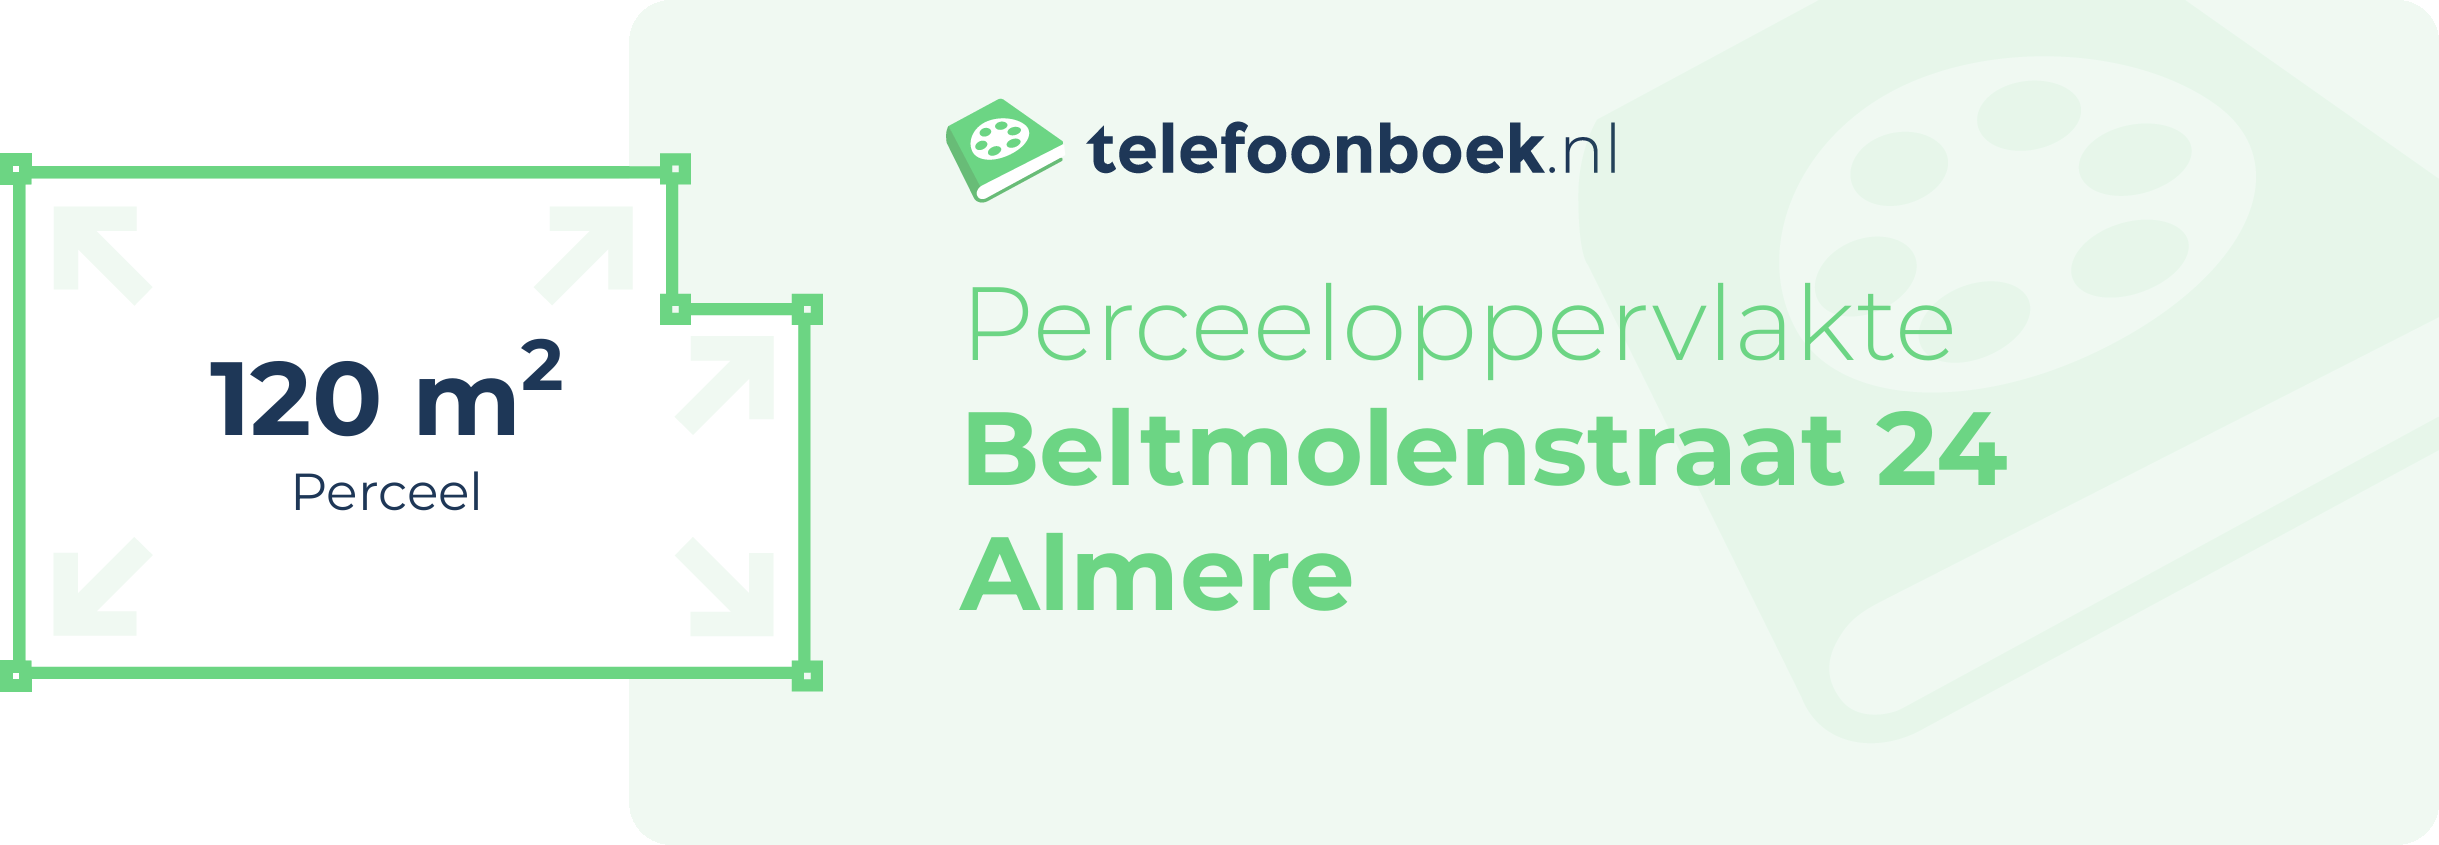 Perceeloppervlakte Beltmolenstraat 24 Almere